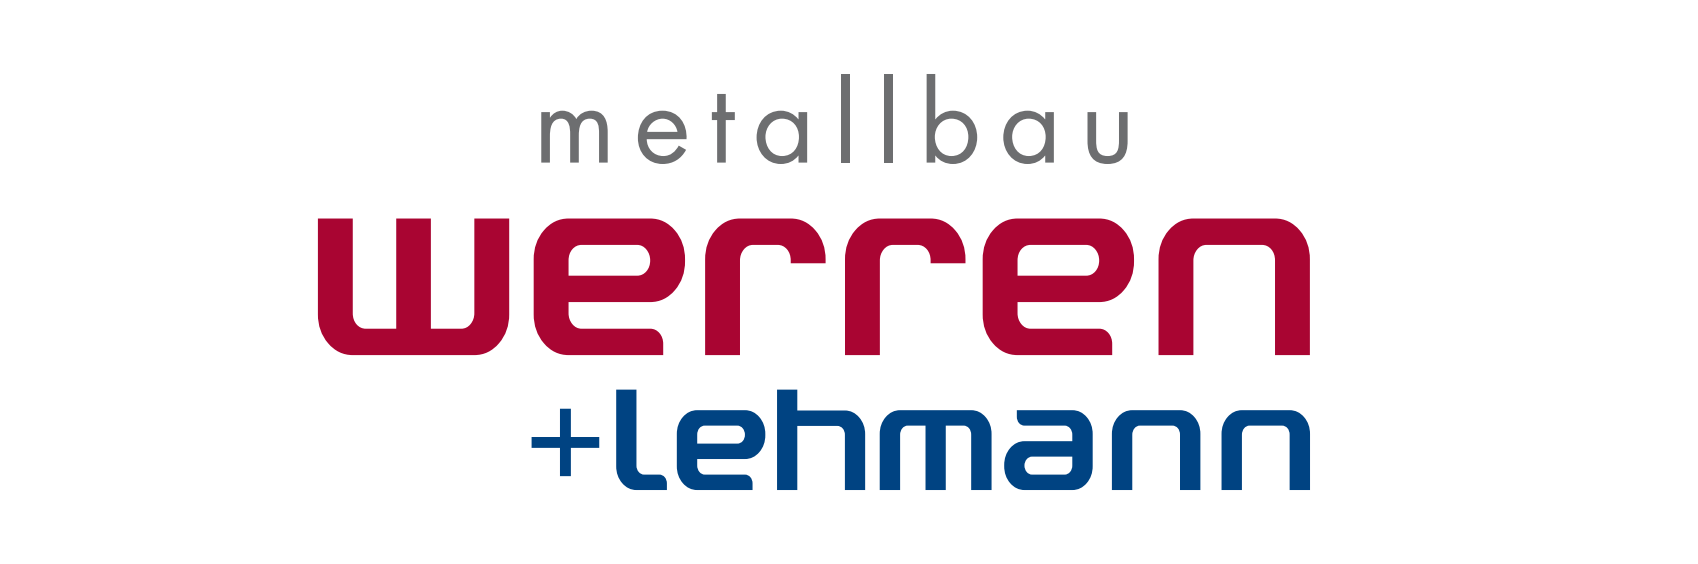 Metallbau Werren + Lehmann GmbH